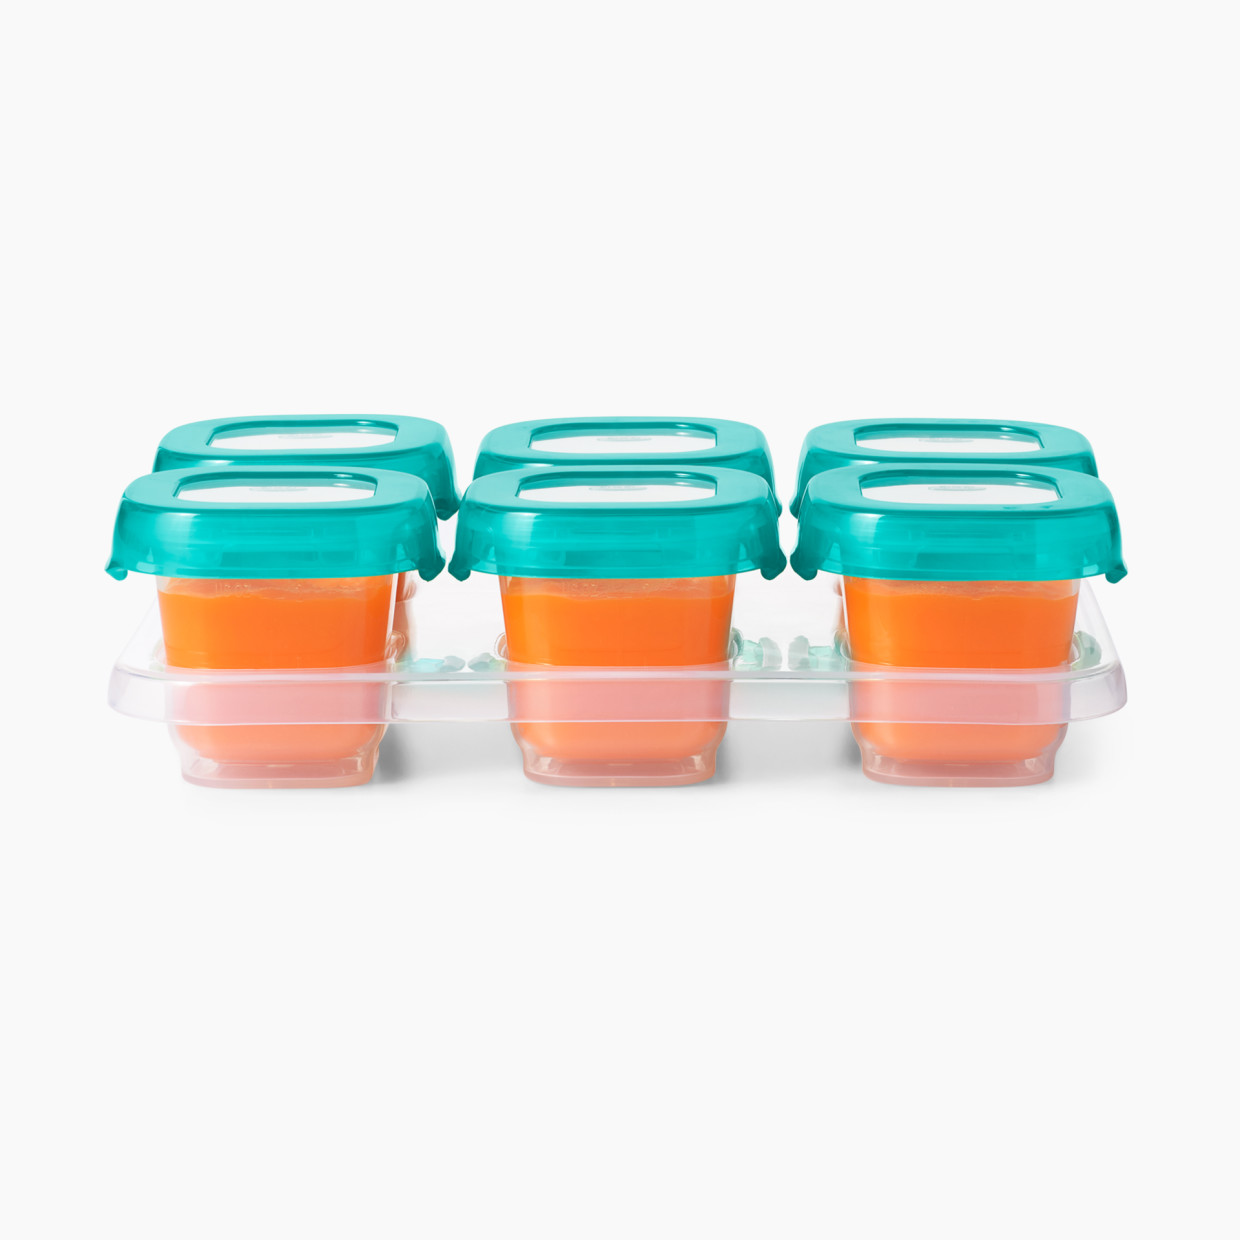 Take & Toss Storage Bowls Value Set -20 Pack